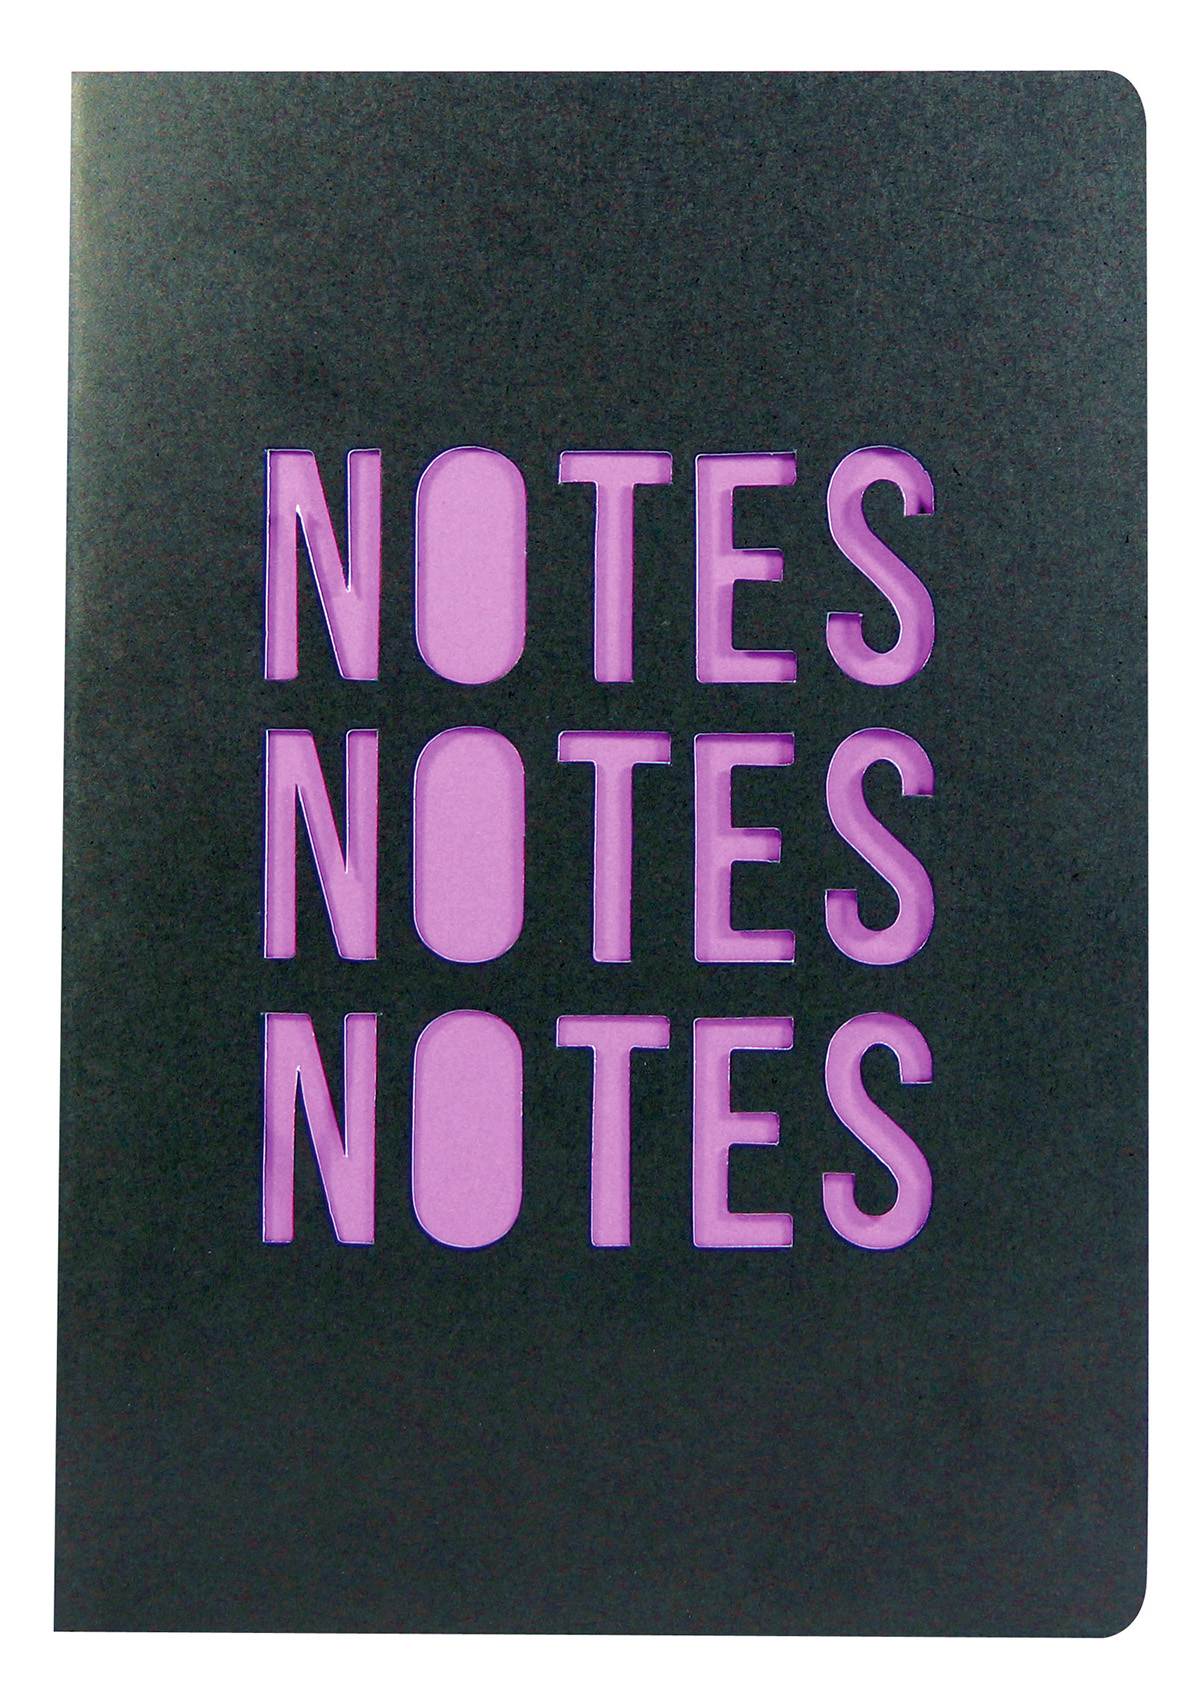 Stationery stationery design notebook notebook design creative notebook creative stationery